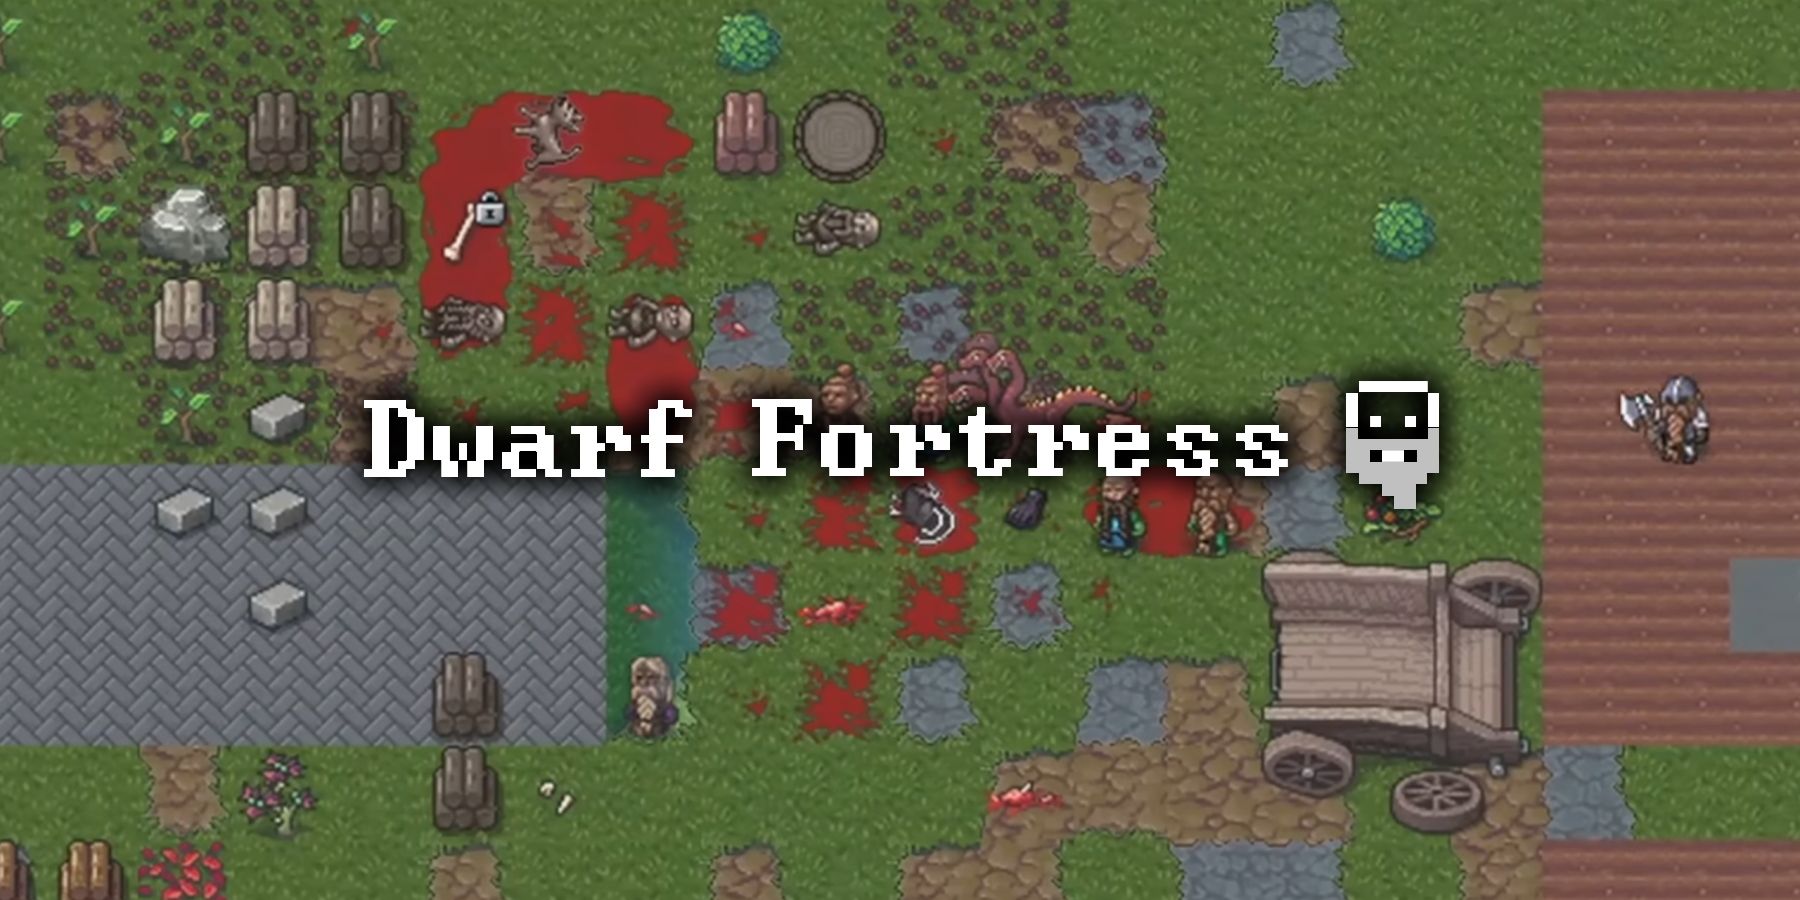 Beasts attacking dwarfs in Dwarf Fortress